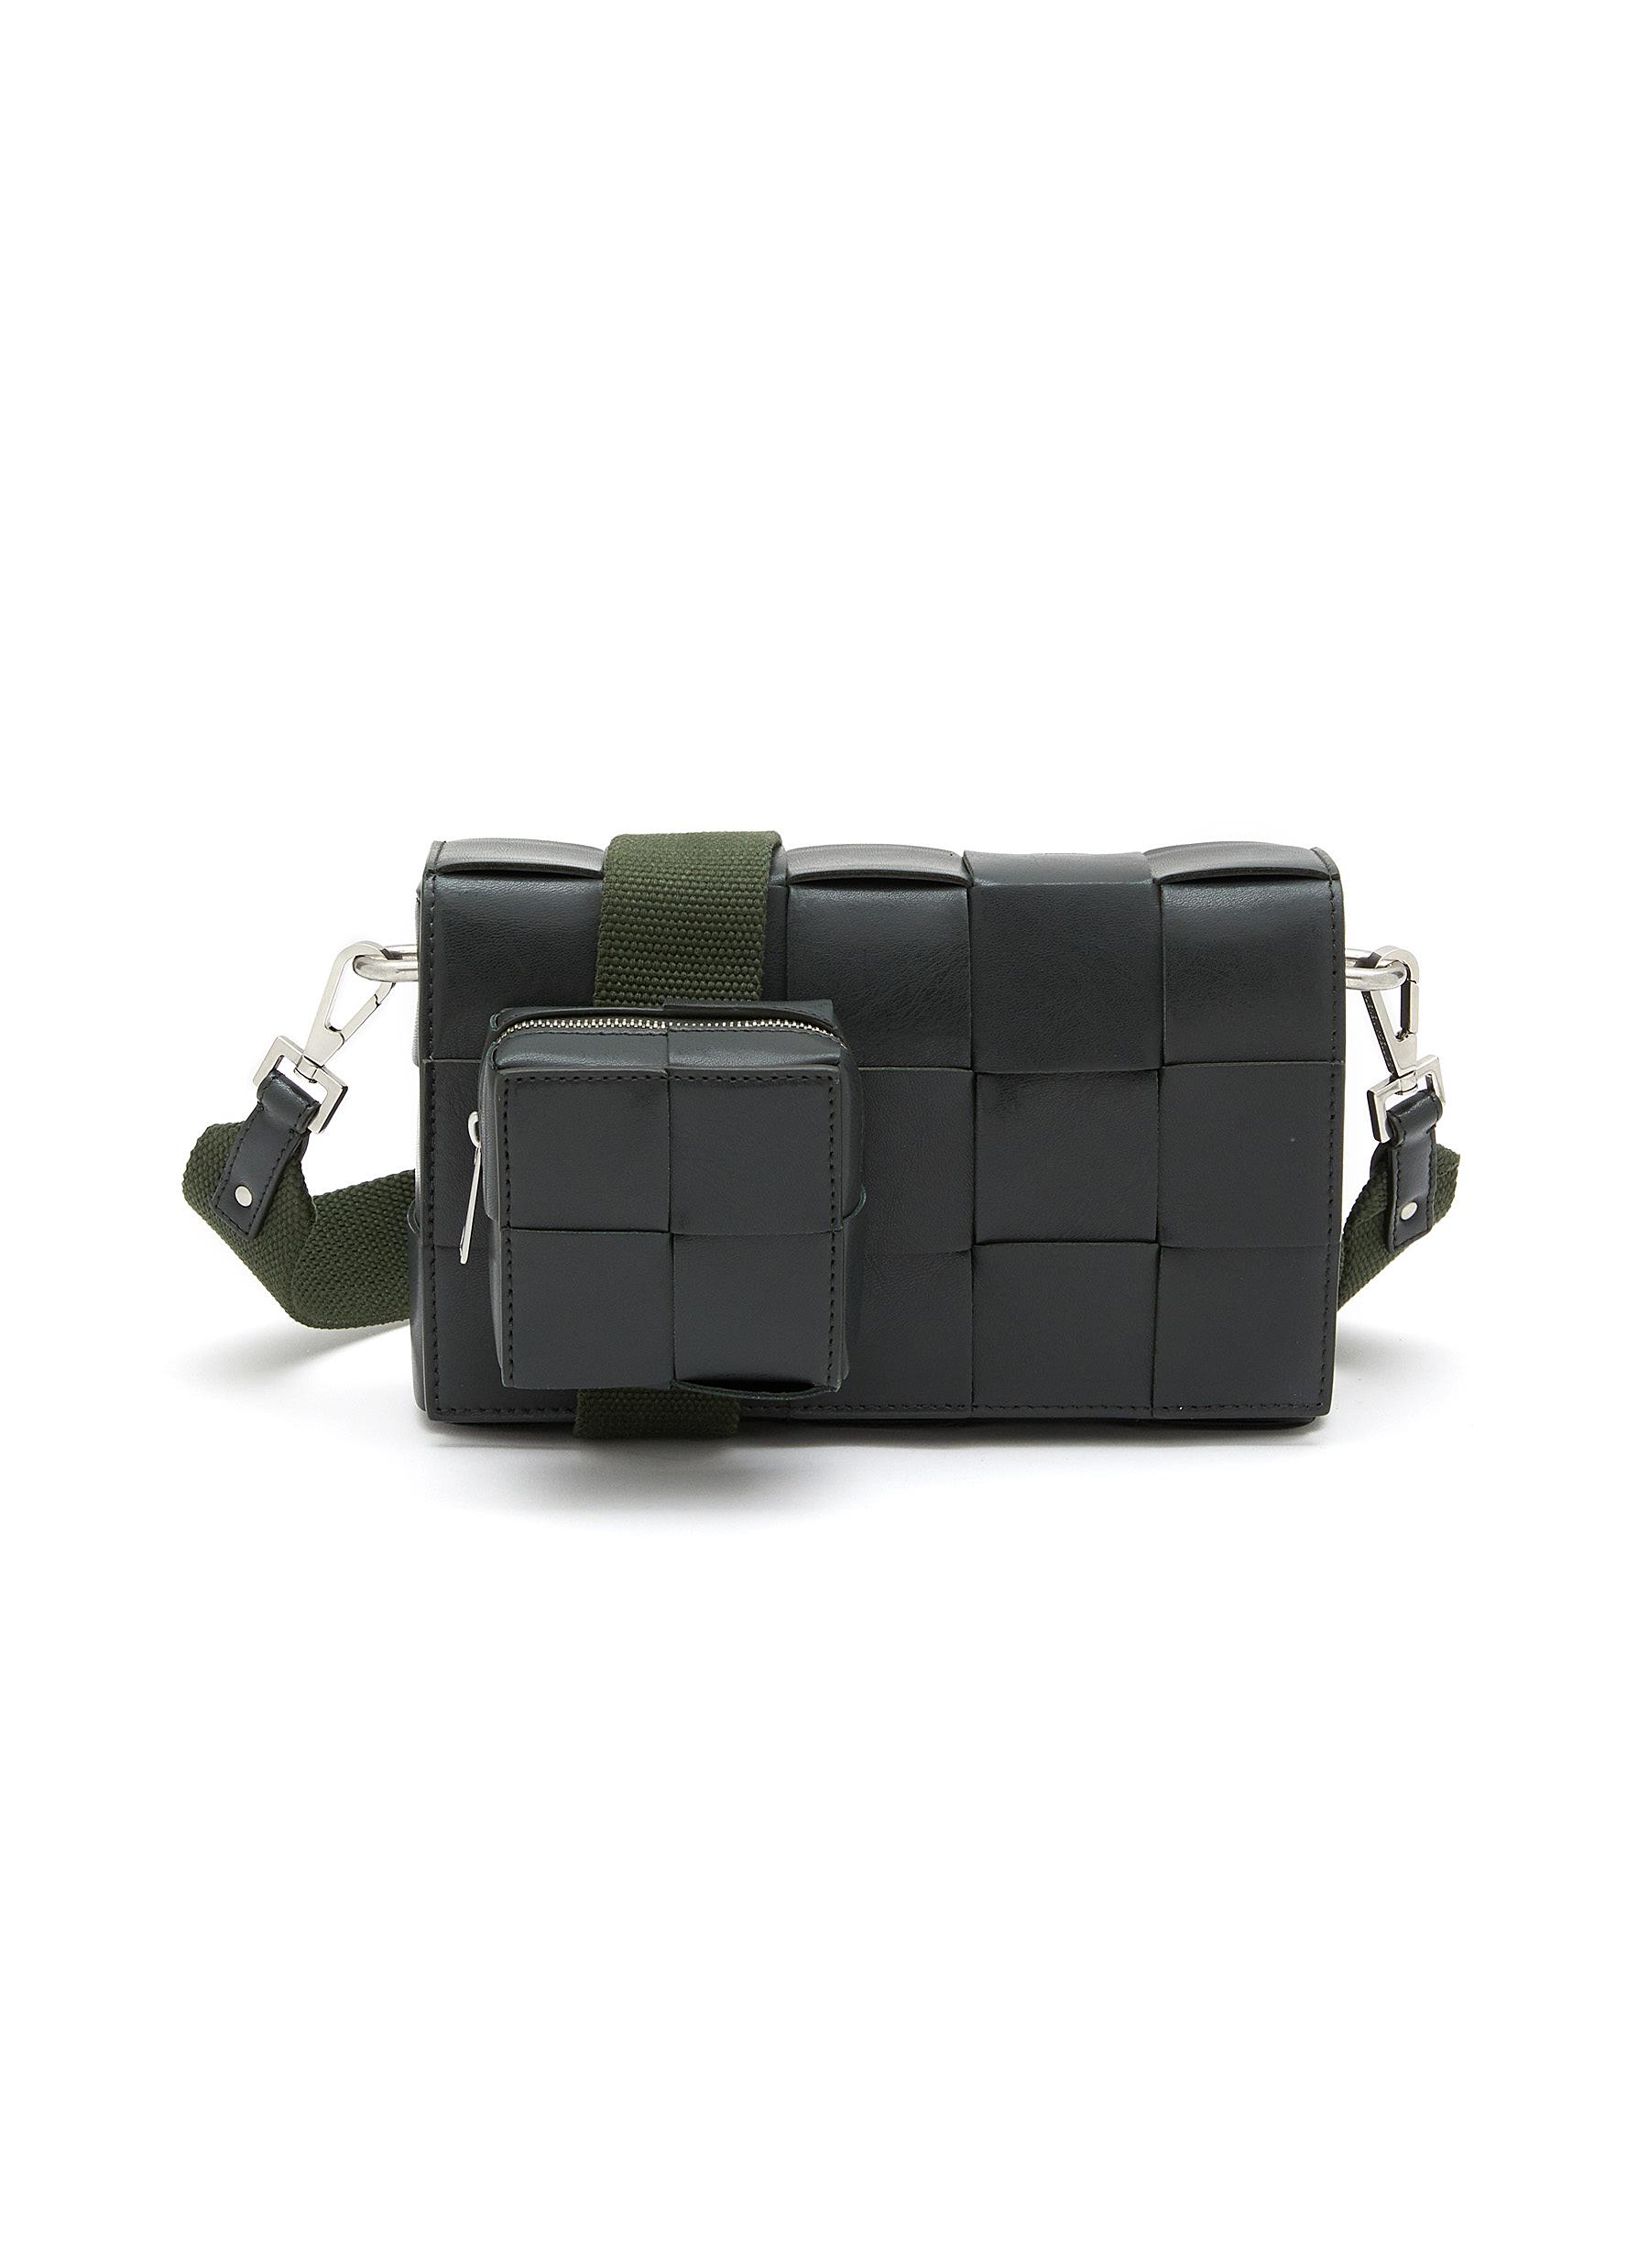 Bottega Veneta® Cassette Belt Bag in Camping. Shop online now.